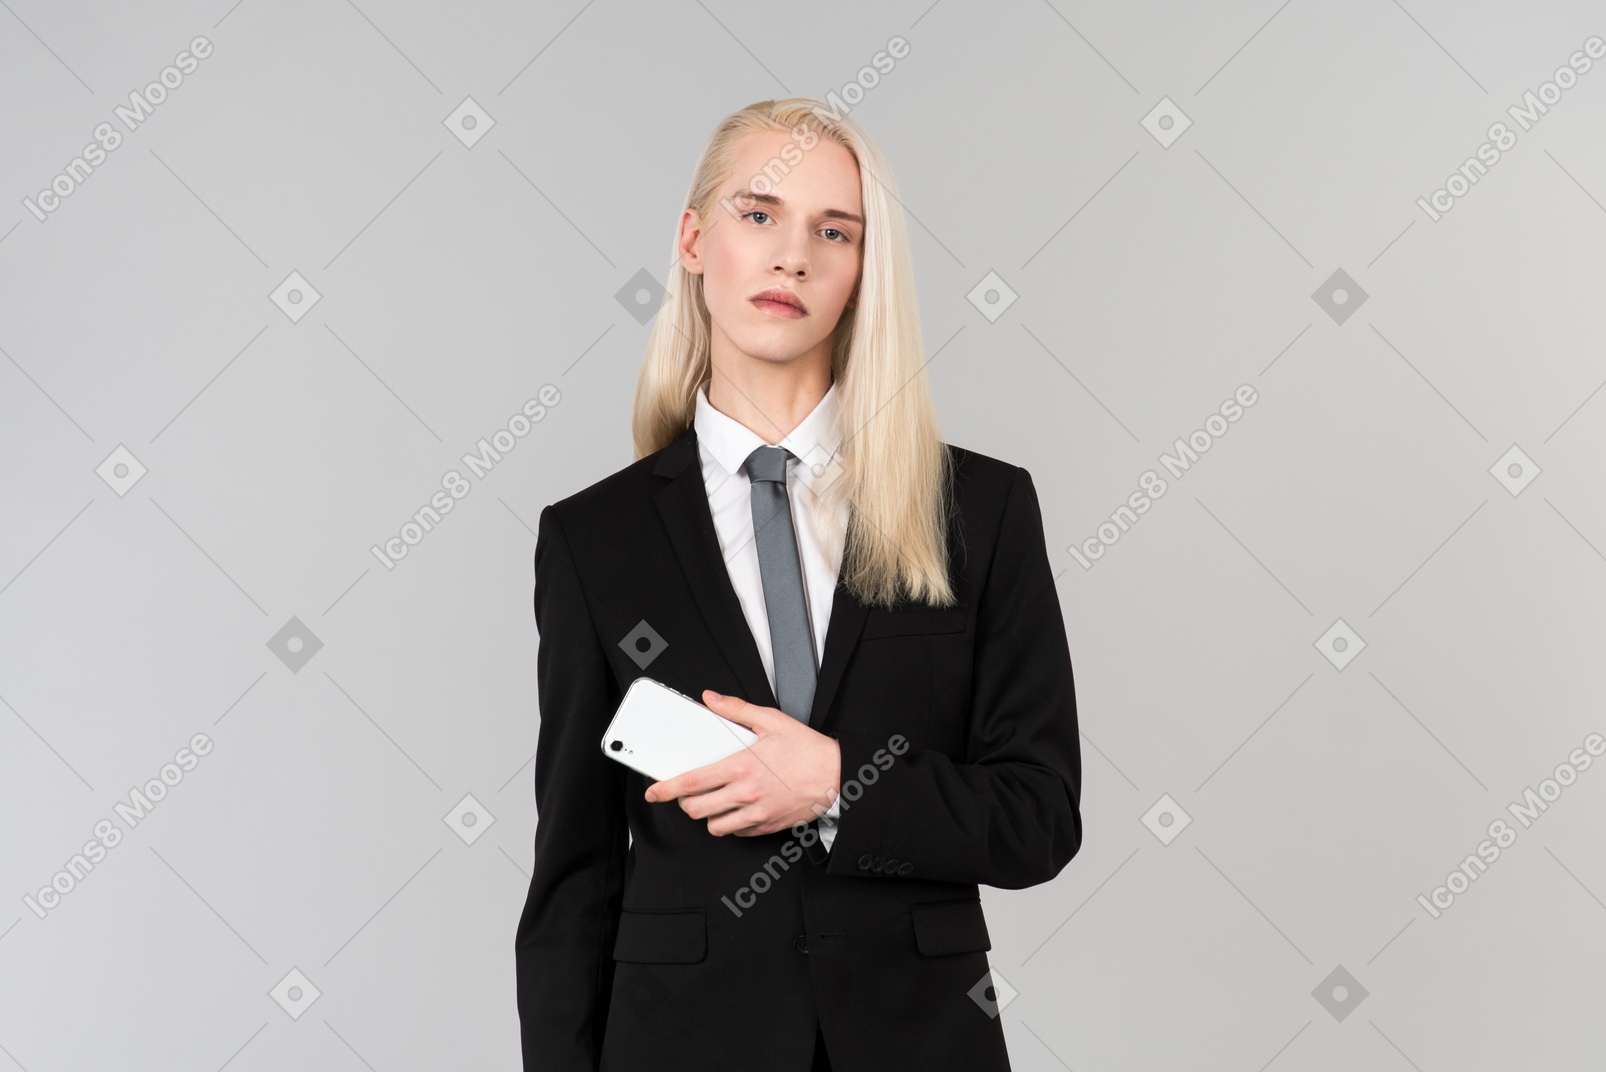 Junger gutaussehender mann mit langen blonden haaren, in einem schwarzen anzug und einer krawatte, vor dem schlichten grauen hintergrund stehend